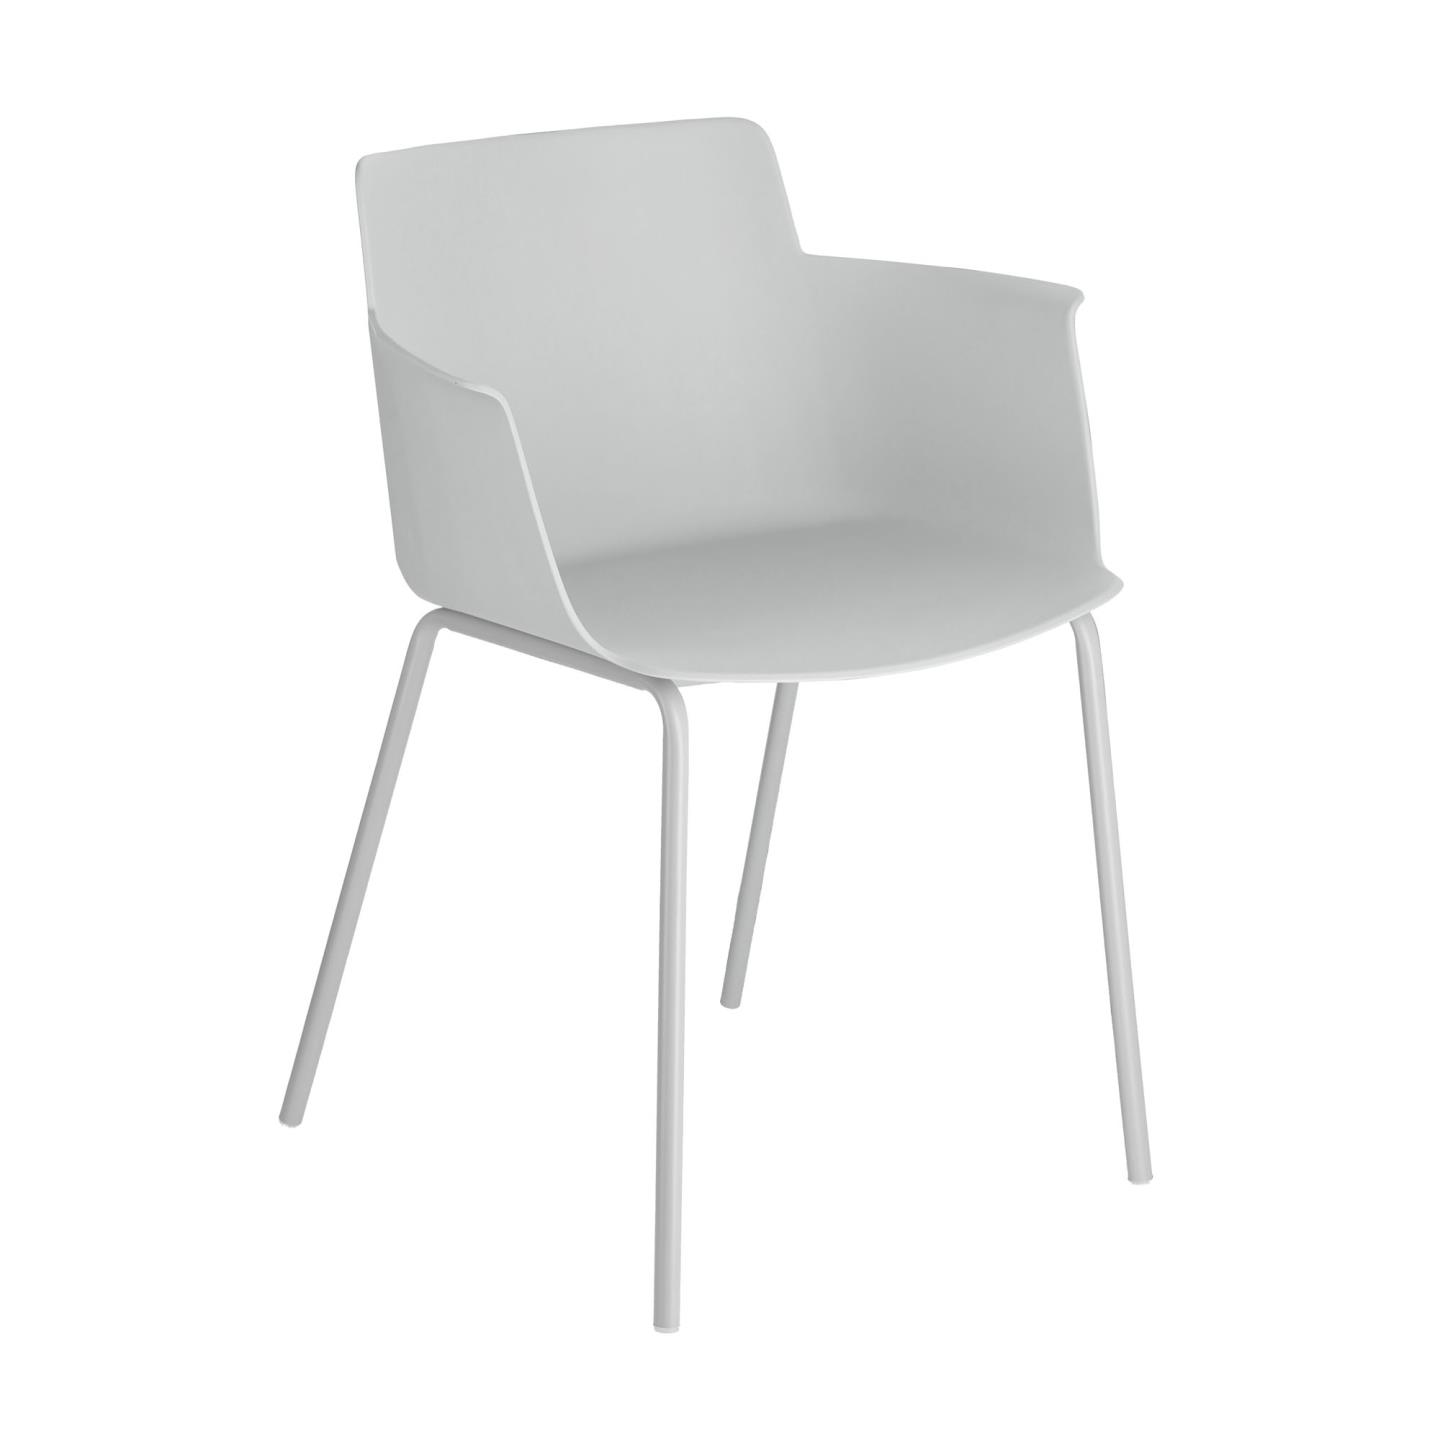 LAFORMA Hannia spisebordsstol, m. armlæn - grå polypropylen og grå stål